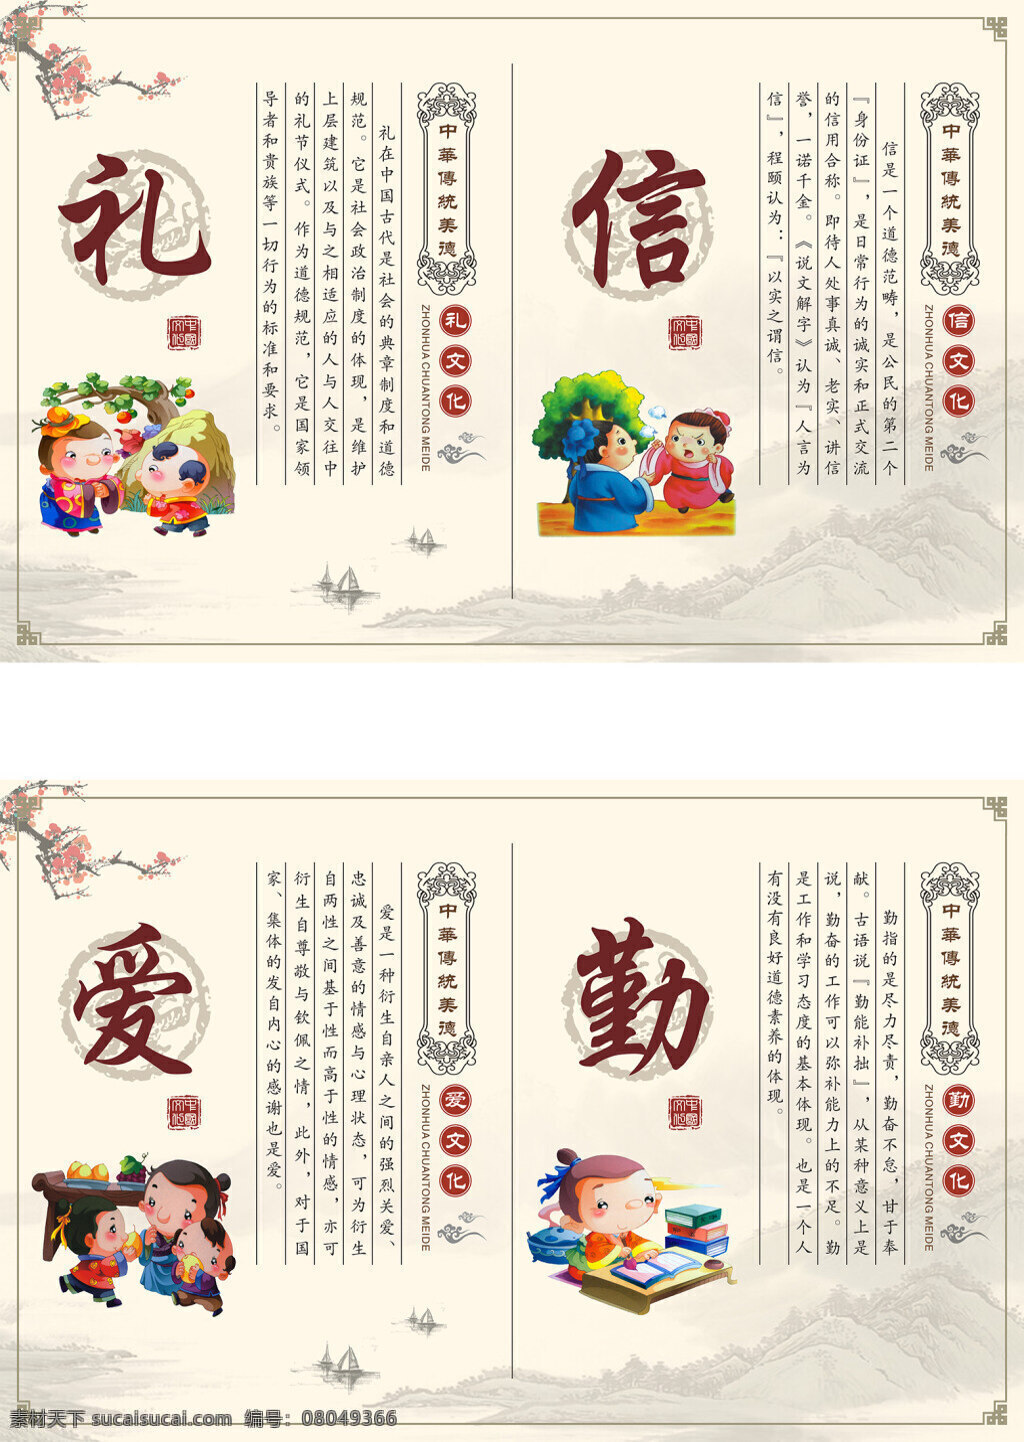 橱窗喷绘 中华文化 传统美德 国学 卡通